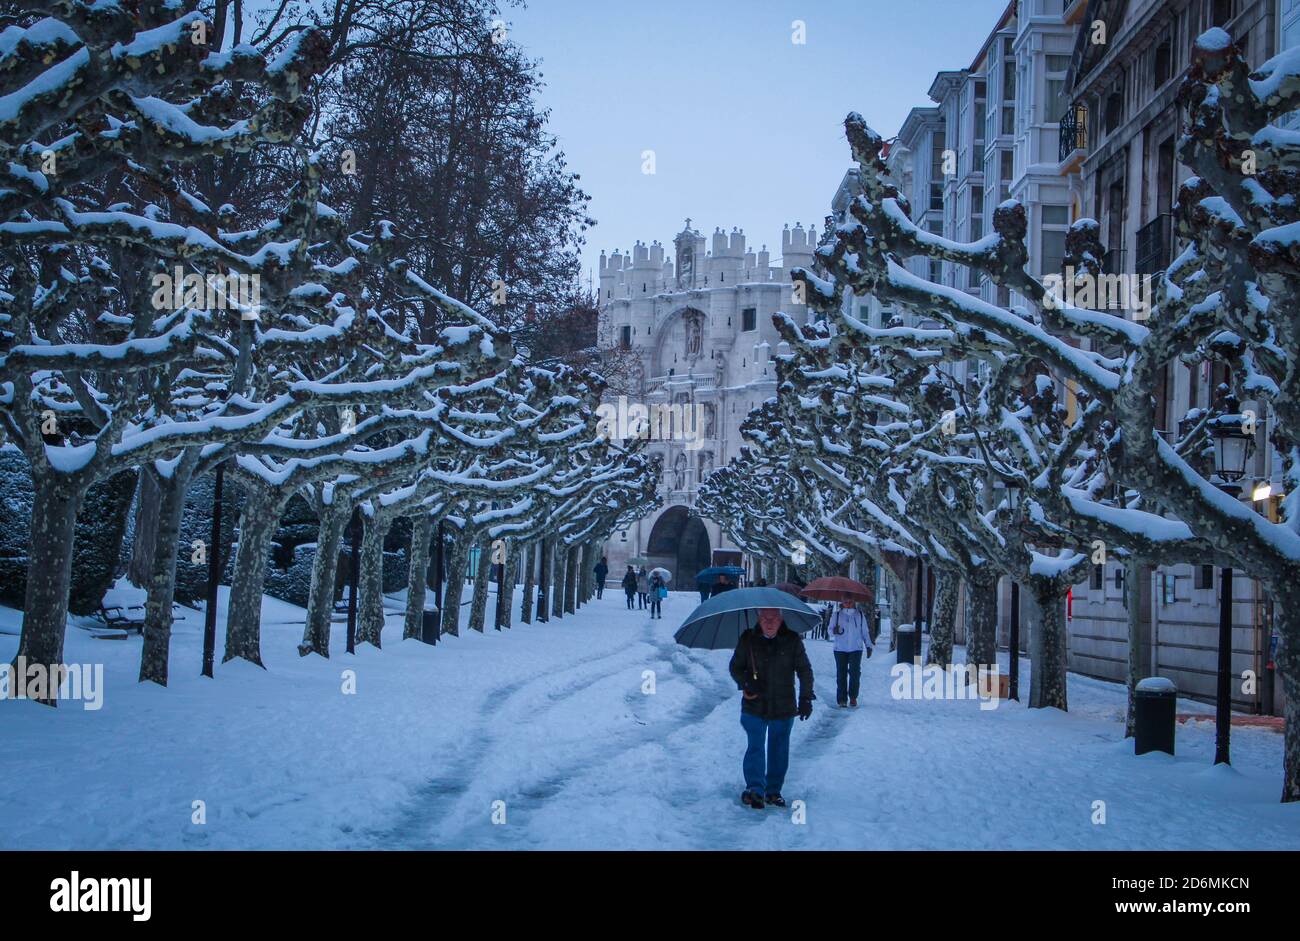 Paseo del espolón con nieve en Burgos Stock Photo